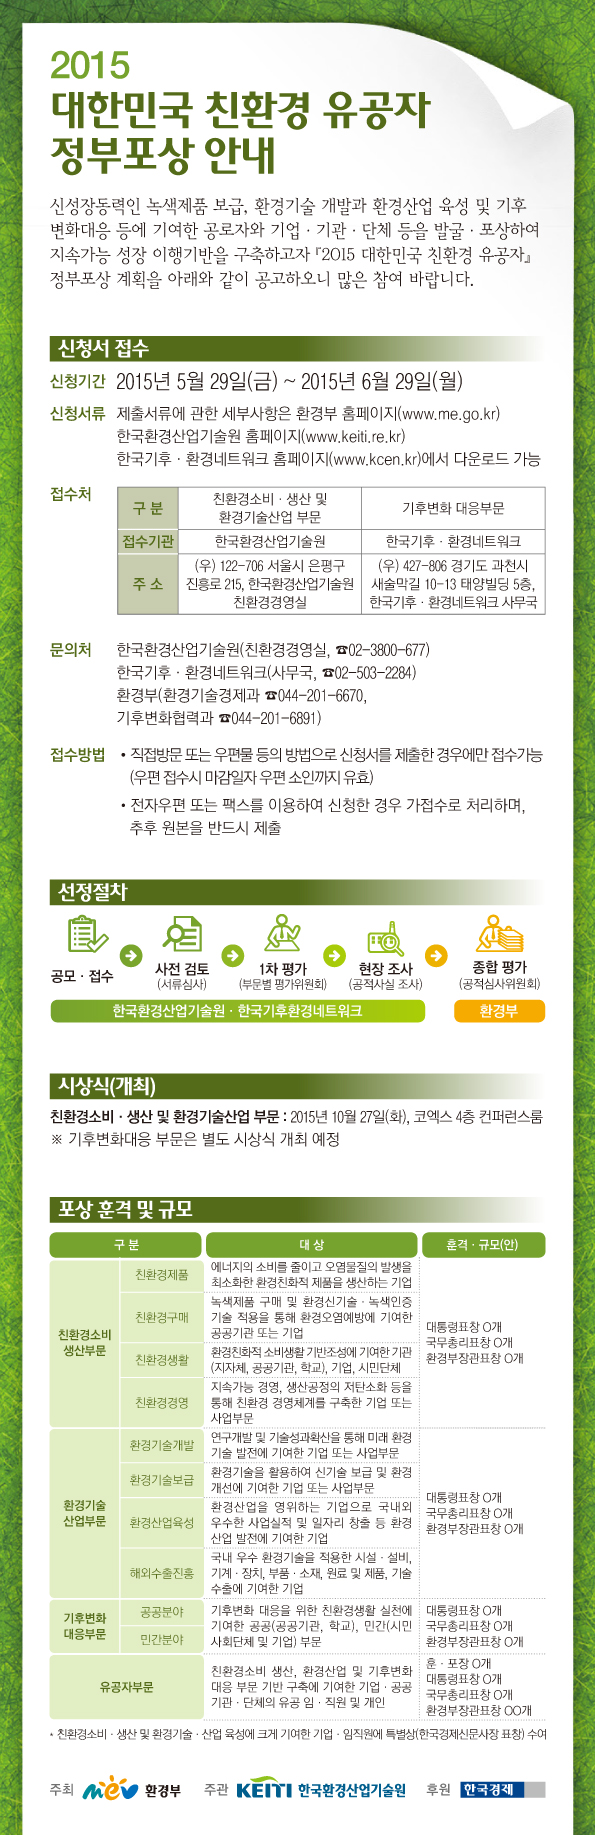 2015 대한민국 친환경 유공자 정부포상 안내